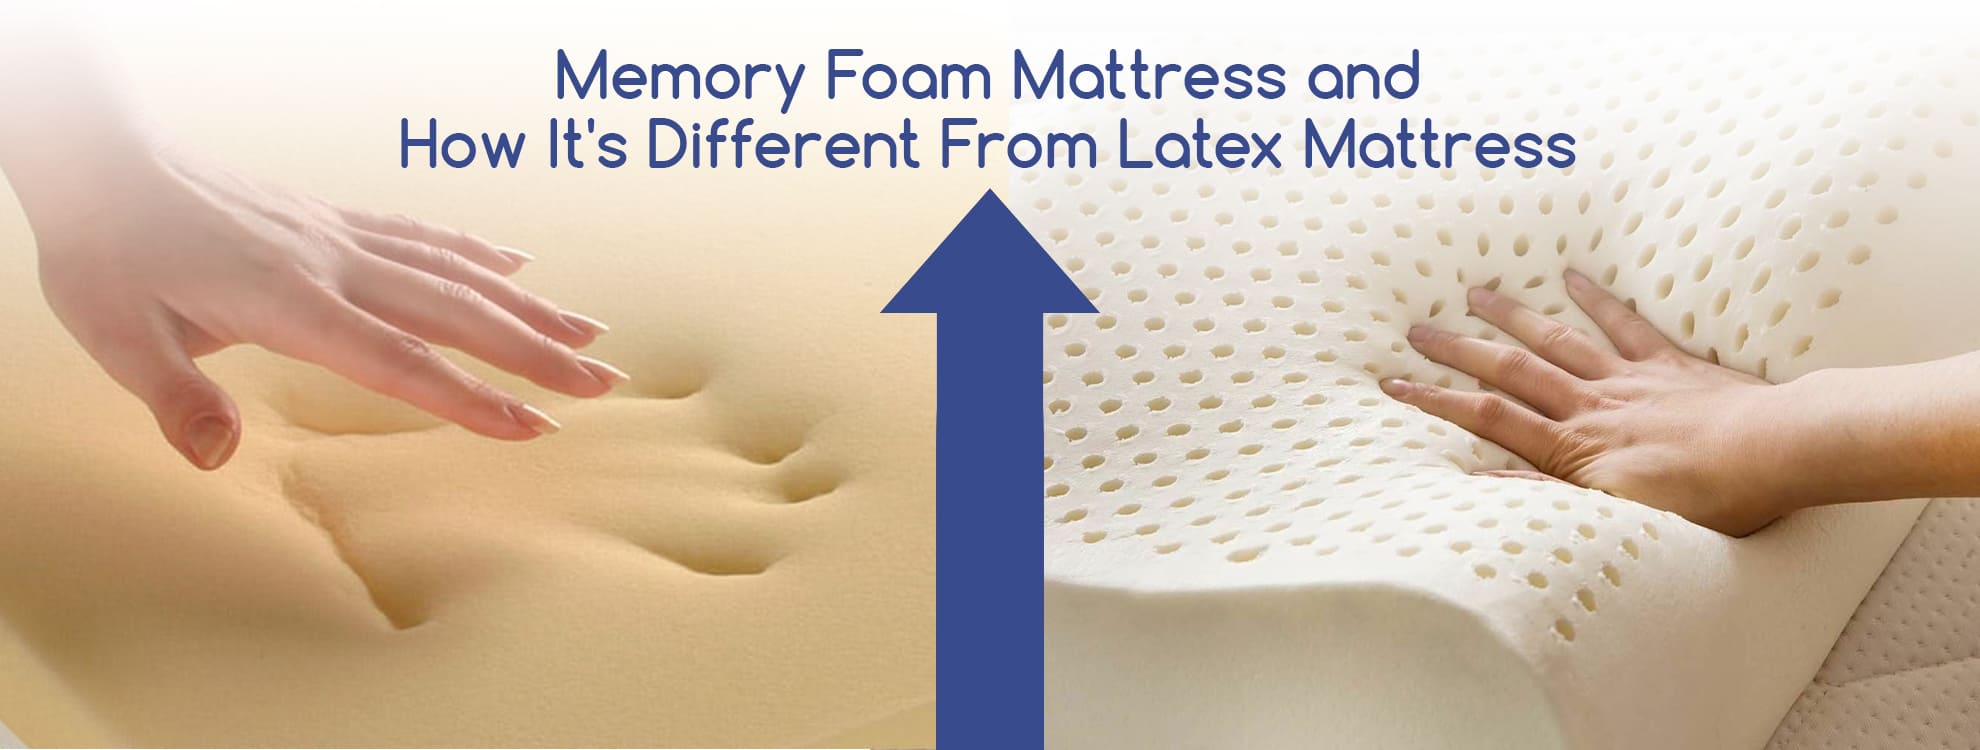 latex mattress cooler than memory foam